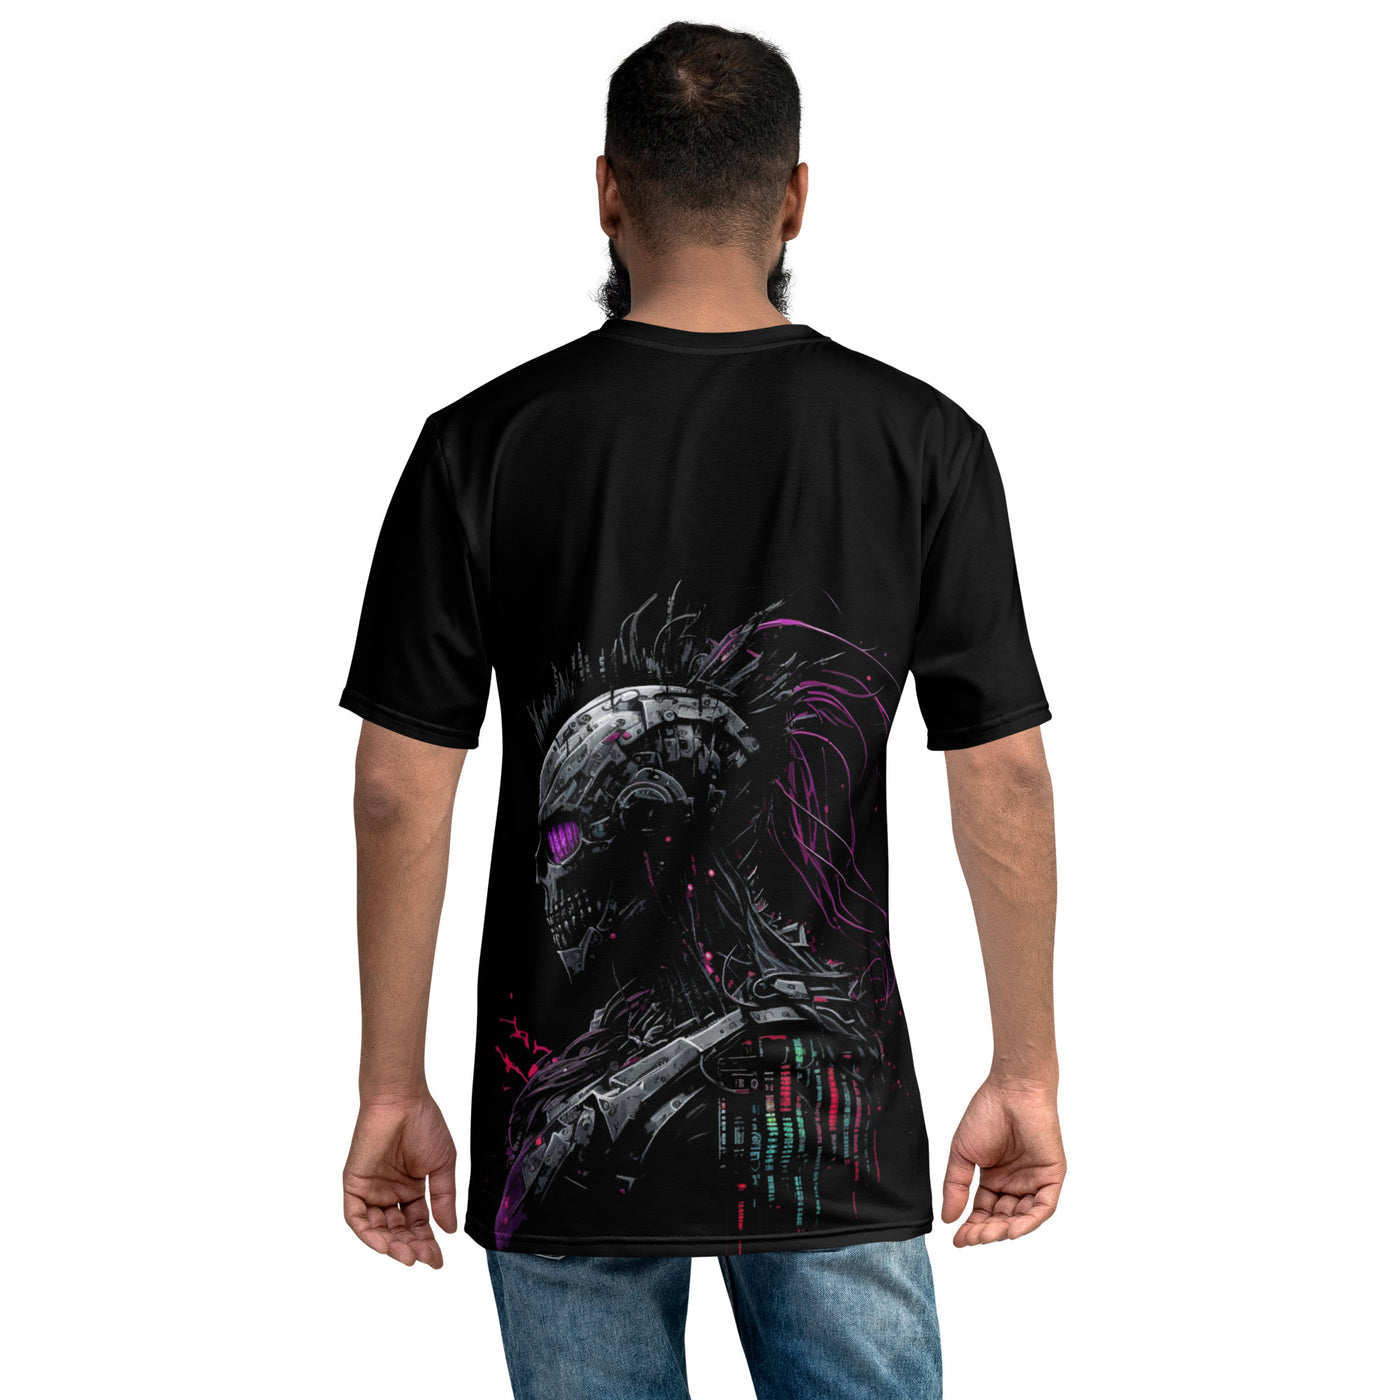 Cyberware assassin v61 - Men's t-shirt